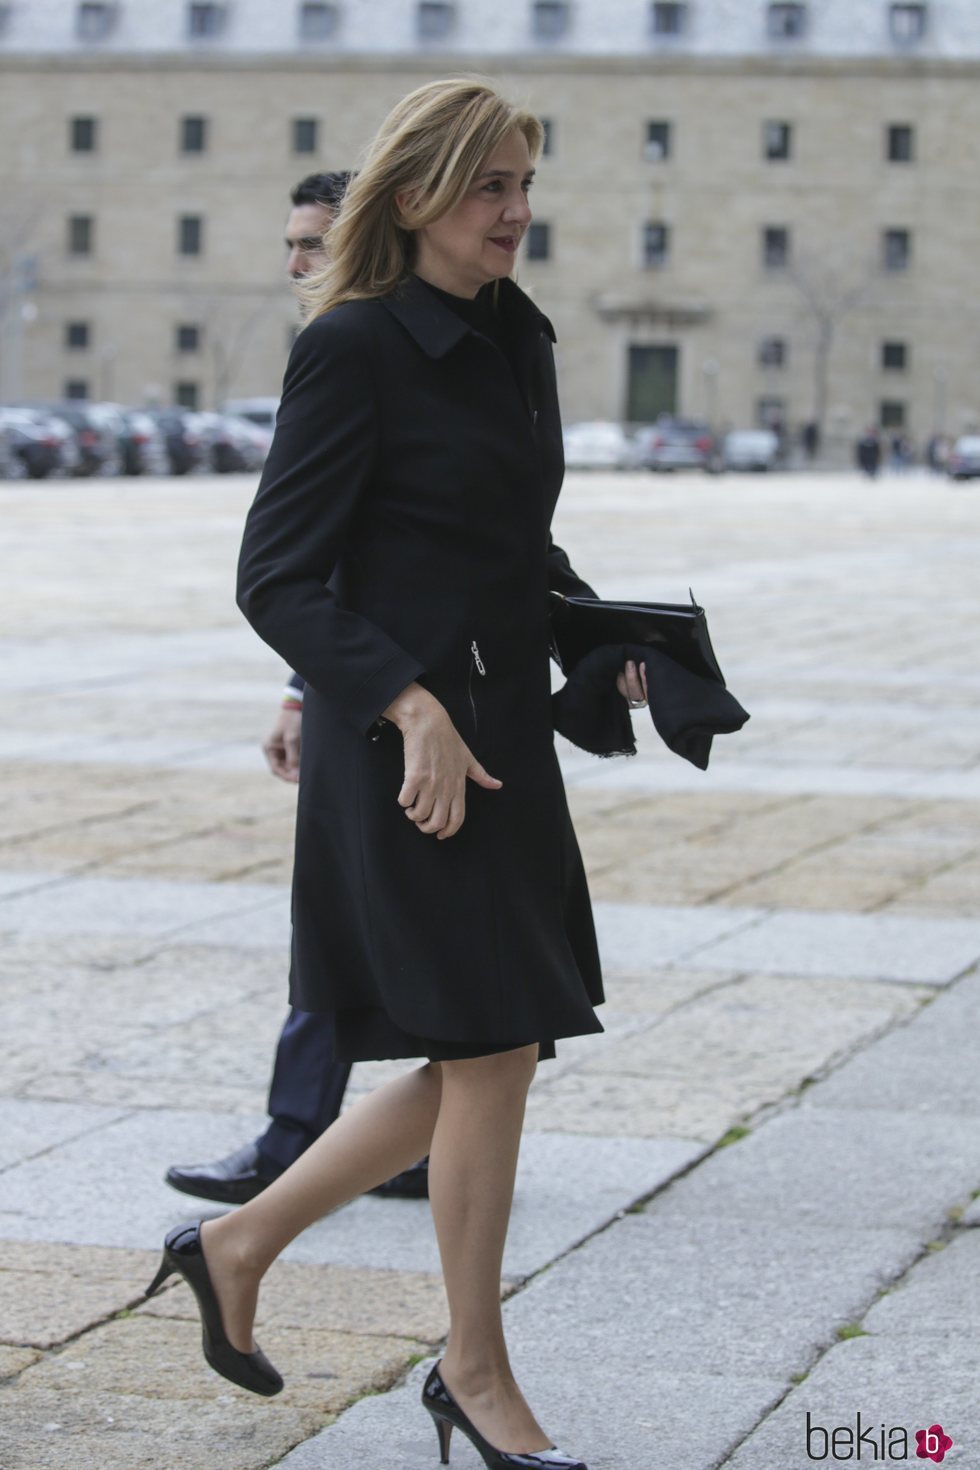 La Infanta Cristina en la misa por el 25 aniversario de la muerte del Conde de Barcelona